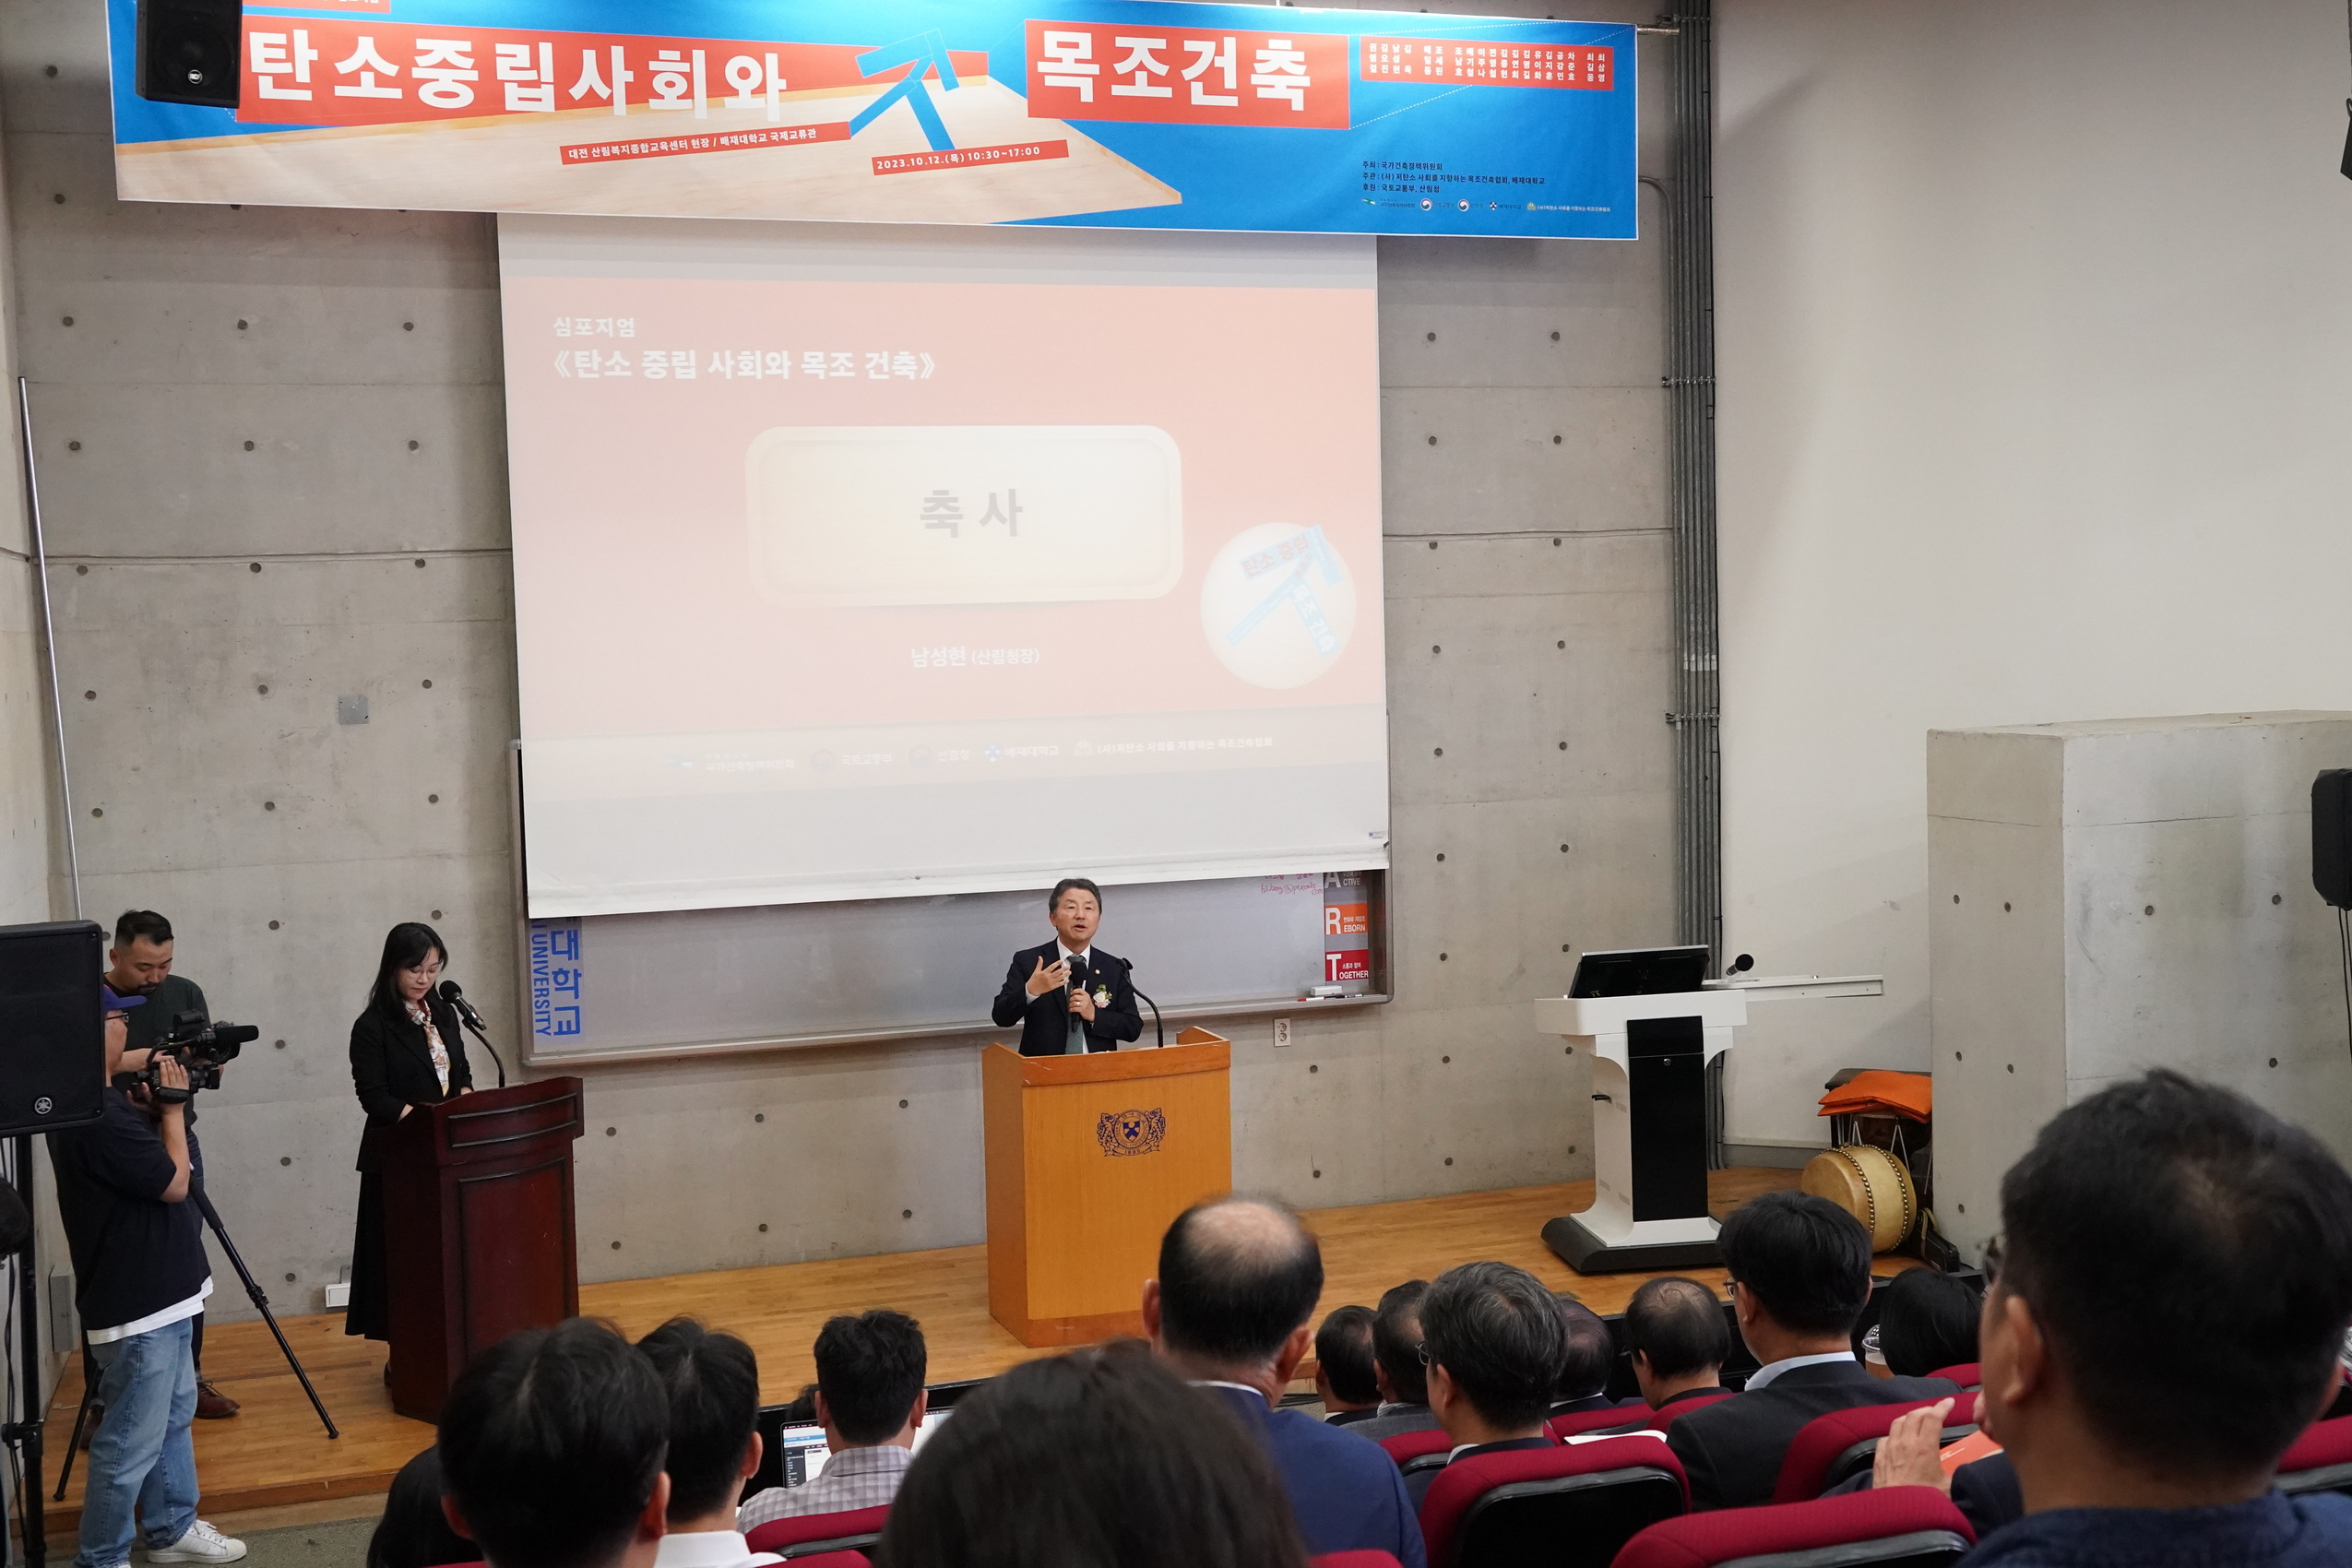 남성현 산림청장, 목조건축 심포지엄 참석 